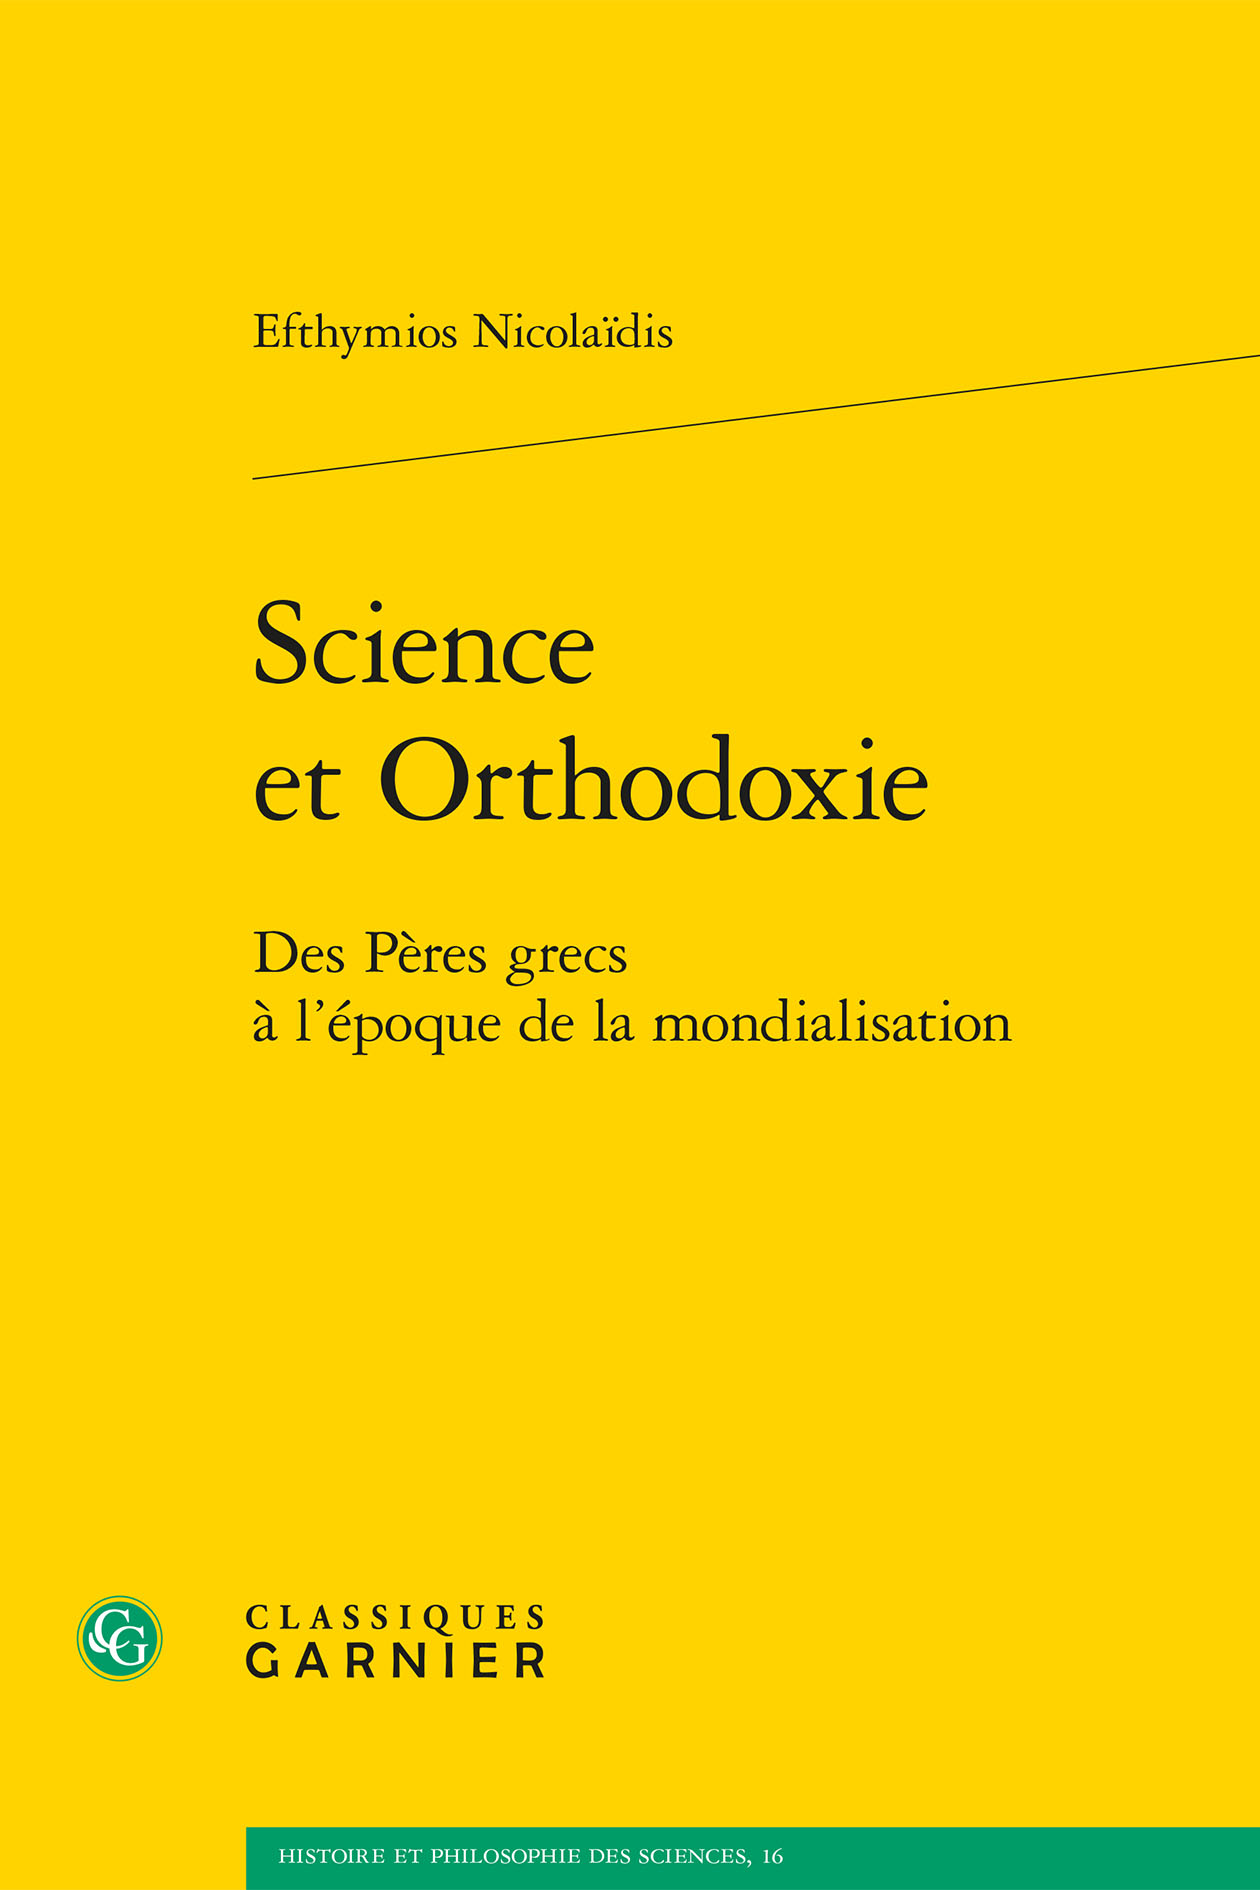 Vient de paraître : “Science et orthodoxie – Des Pères grecs à l’époque de la mondialisation” (Classiques Garnier)